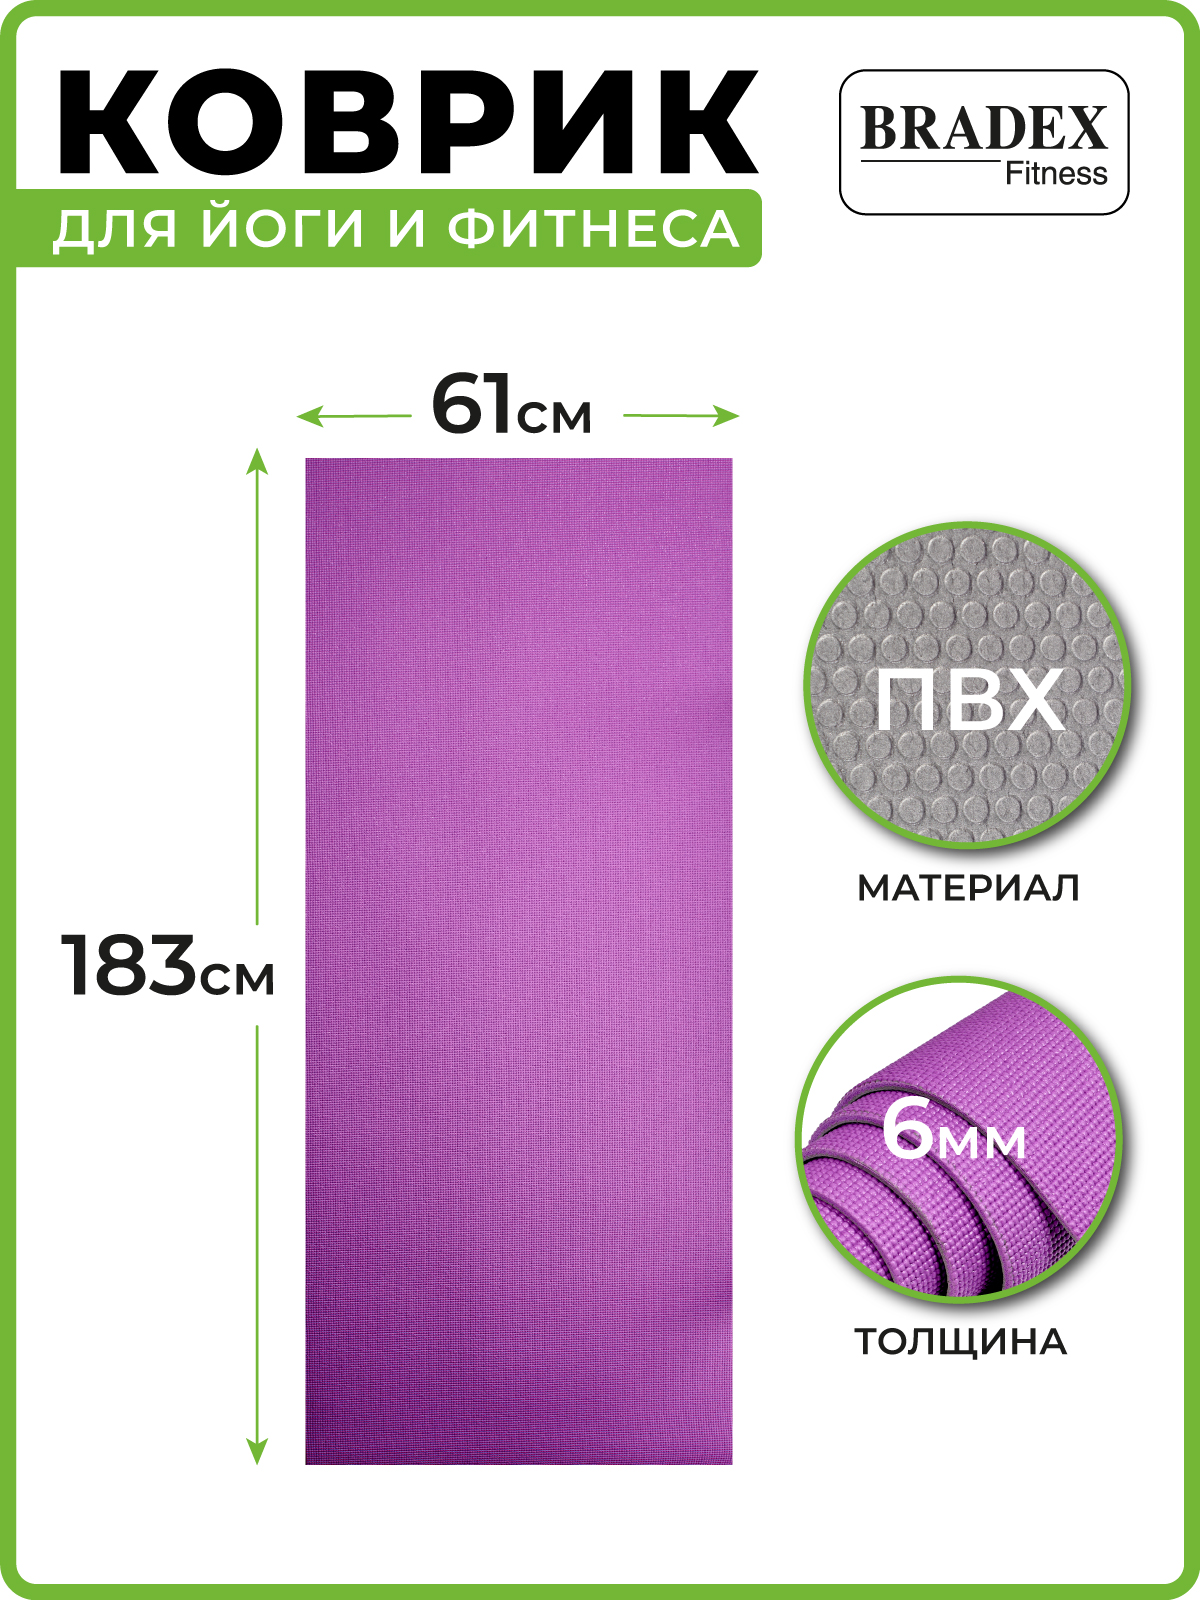 Коврик для йоги и фитнеса Bradex двухслойный фиолетовый 183х61 см с чехлом - фото 2